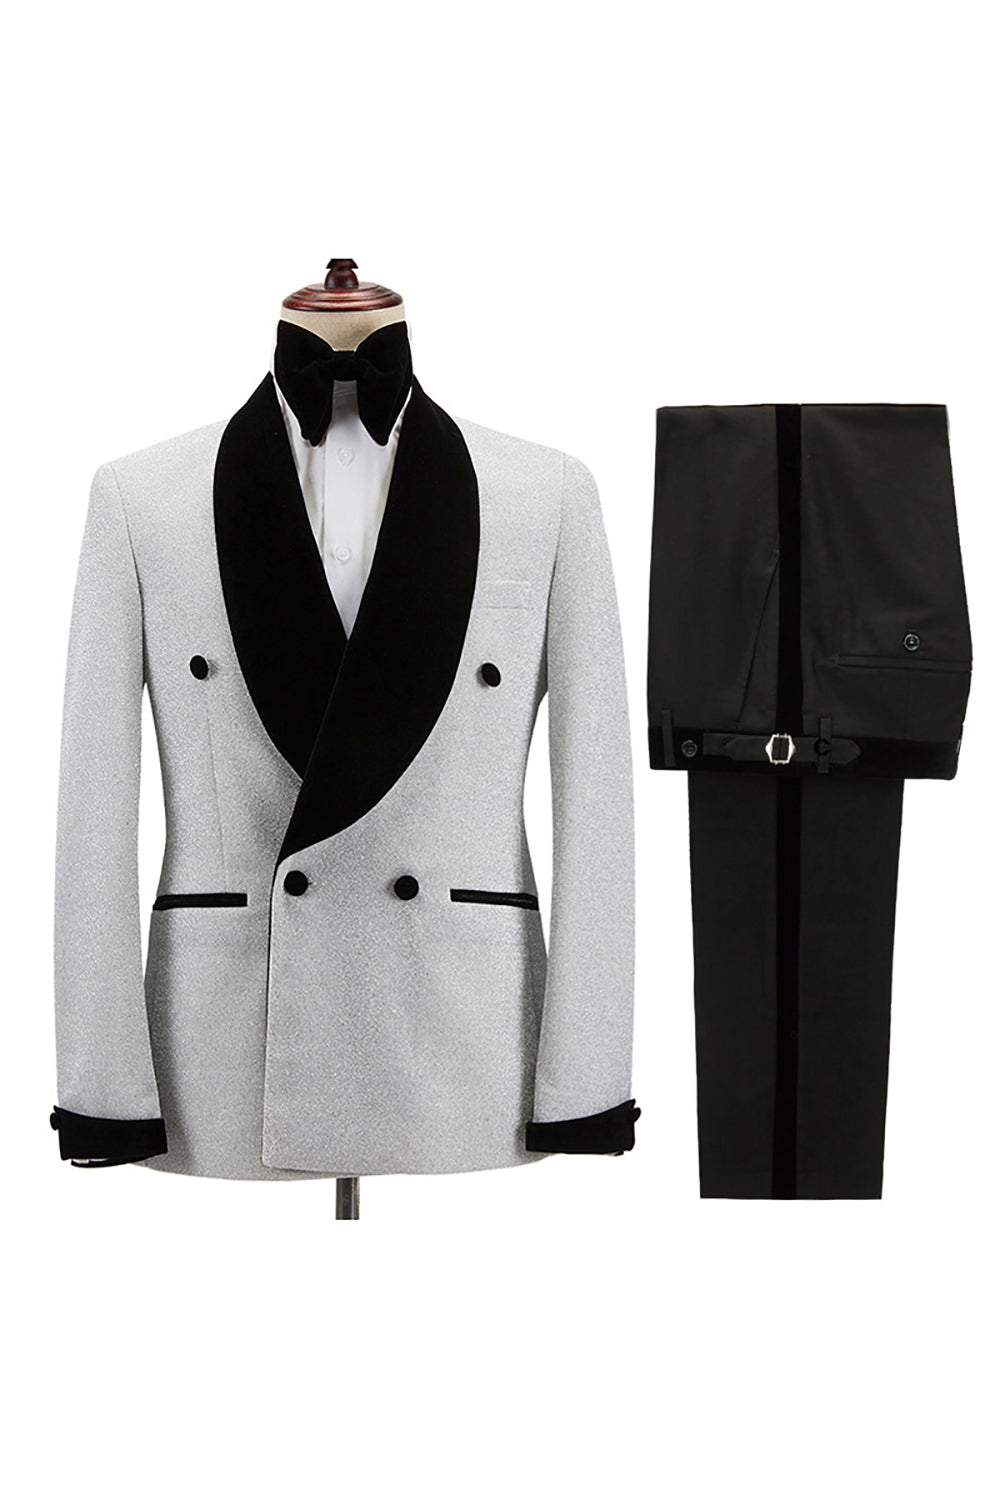 White 2 Piece Shawl Lapel Men's Suits